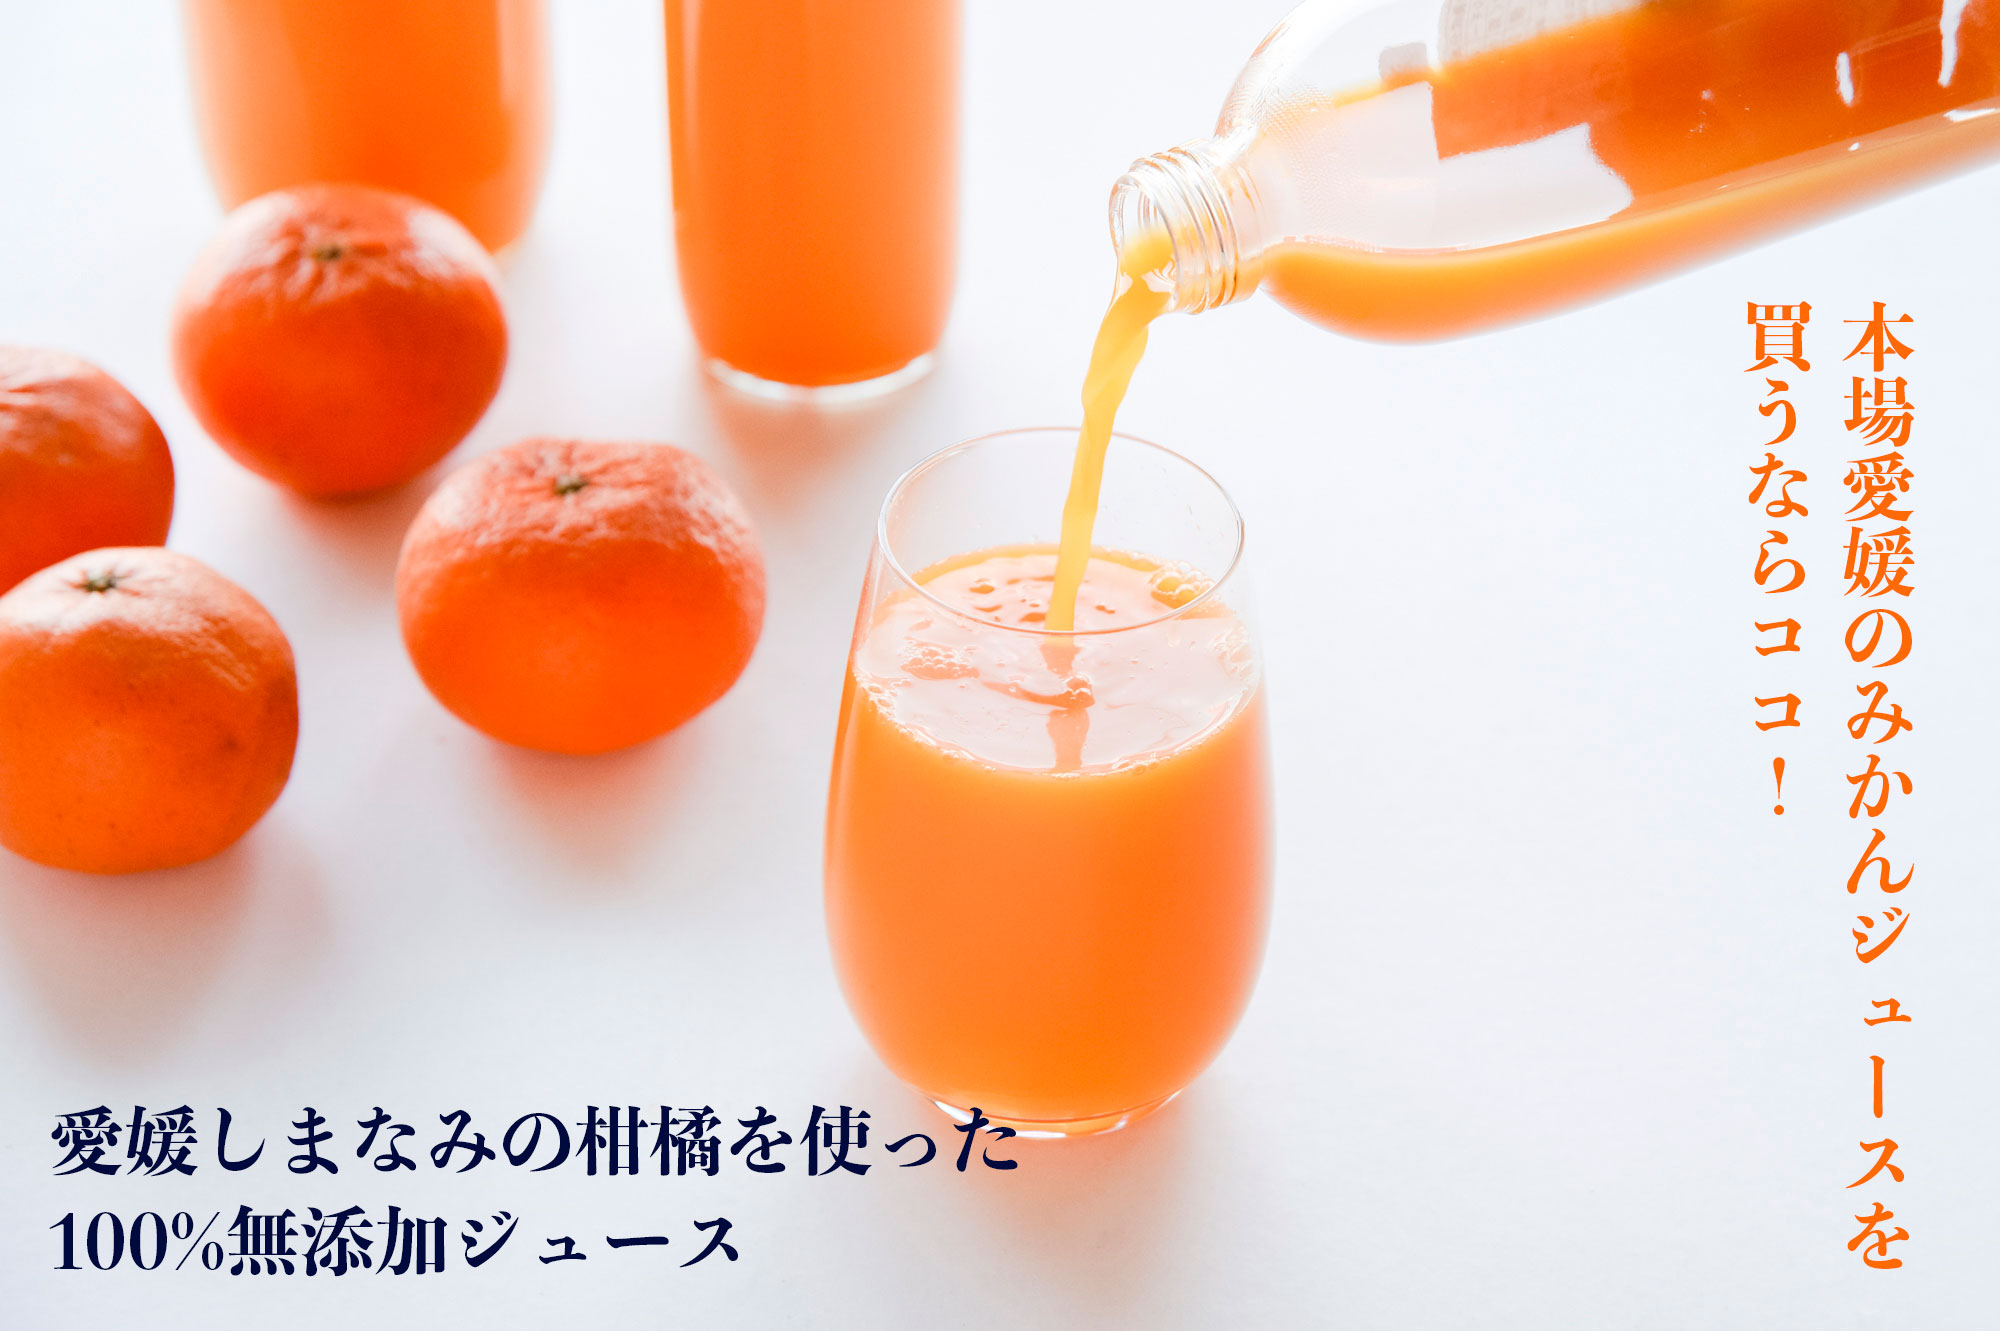 愛媛しまなみの柑橘を使った100%無添加ジュースを圧倒的な鮮度でお届けします。